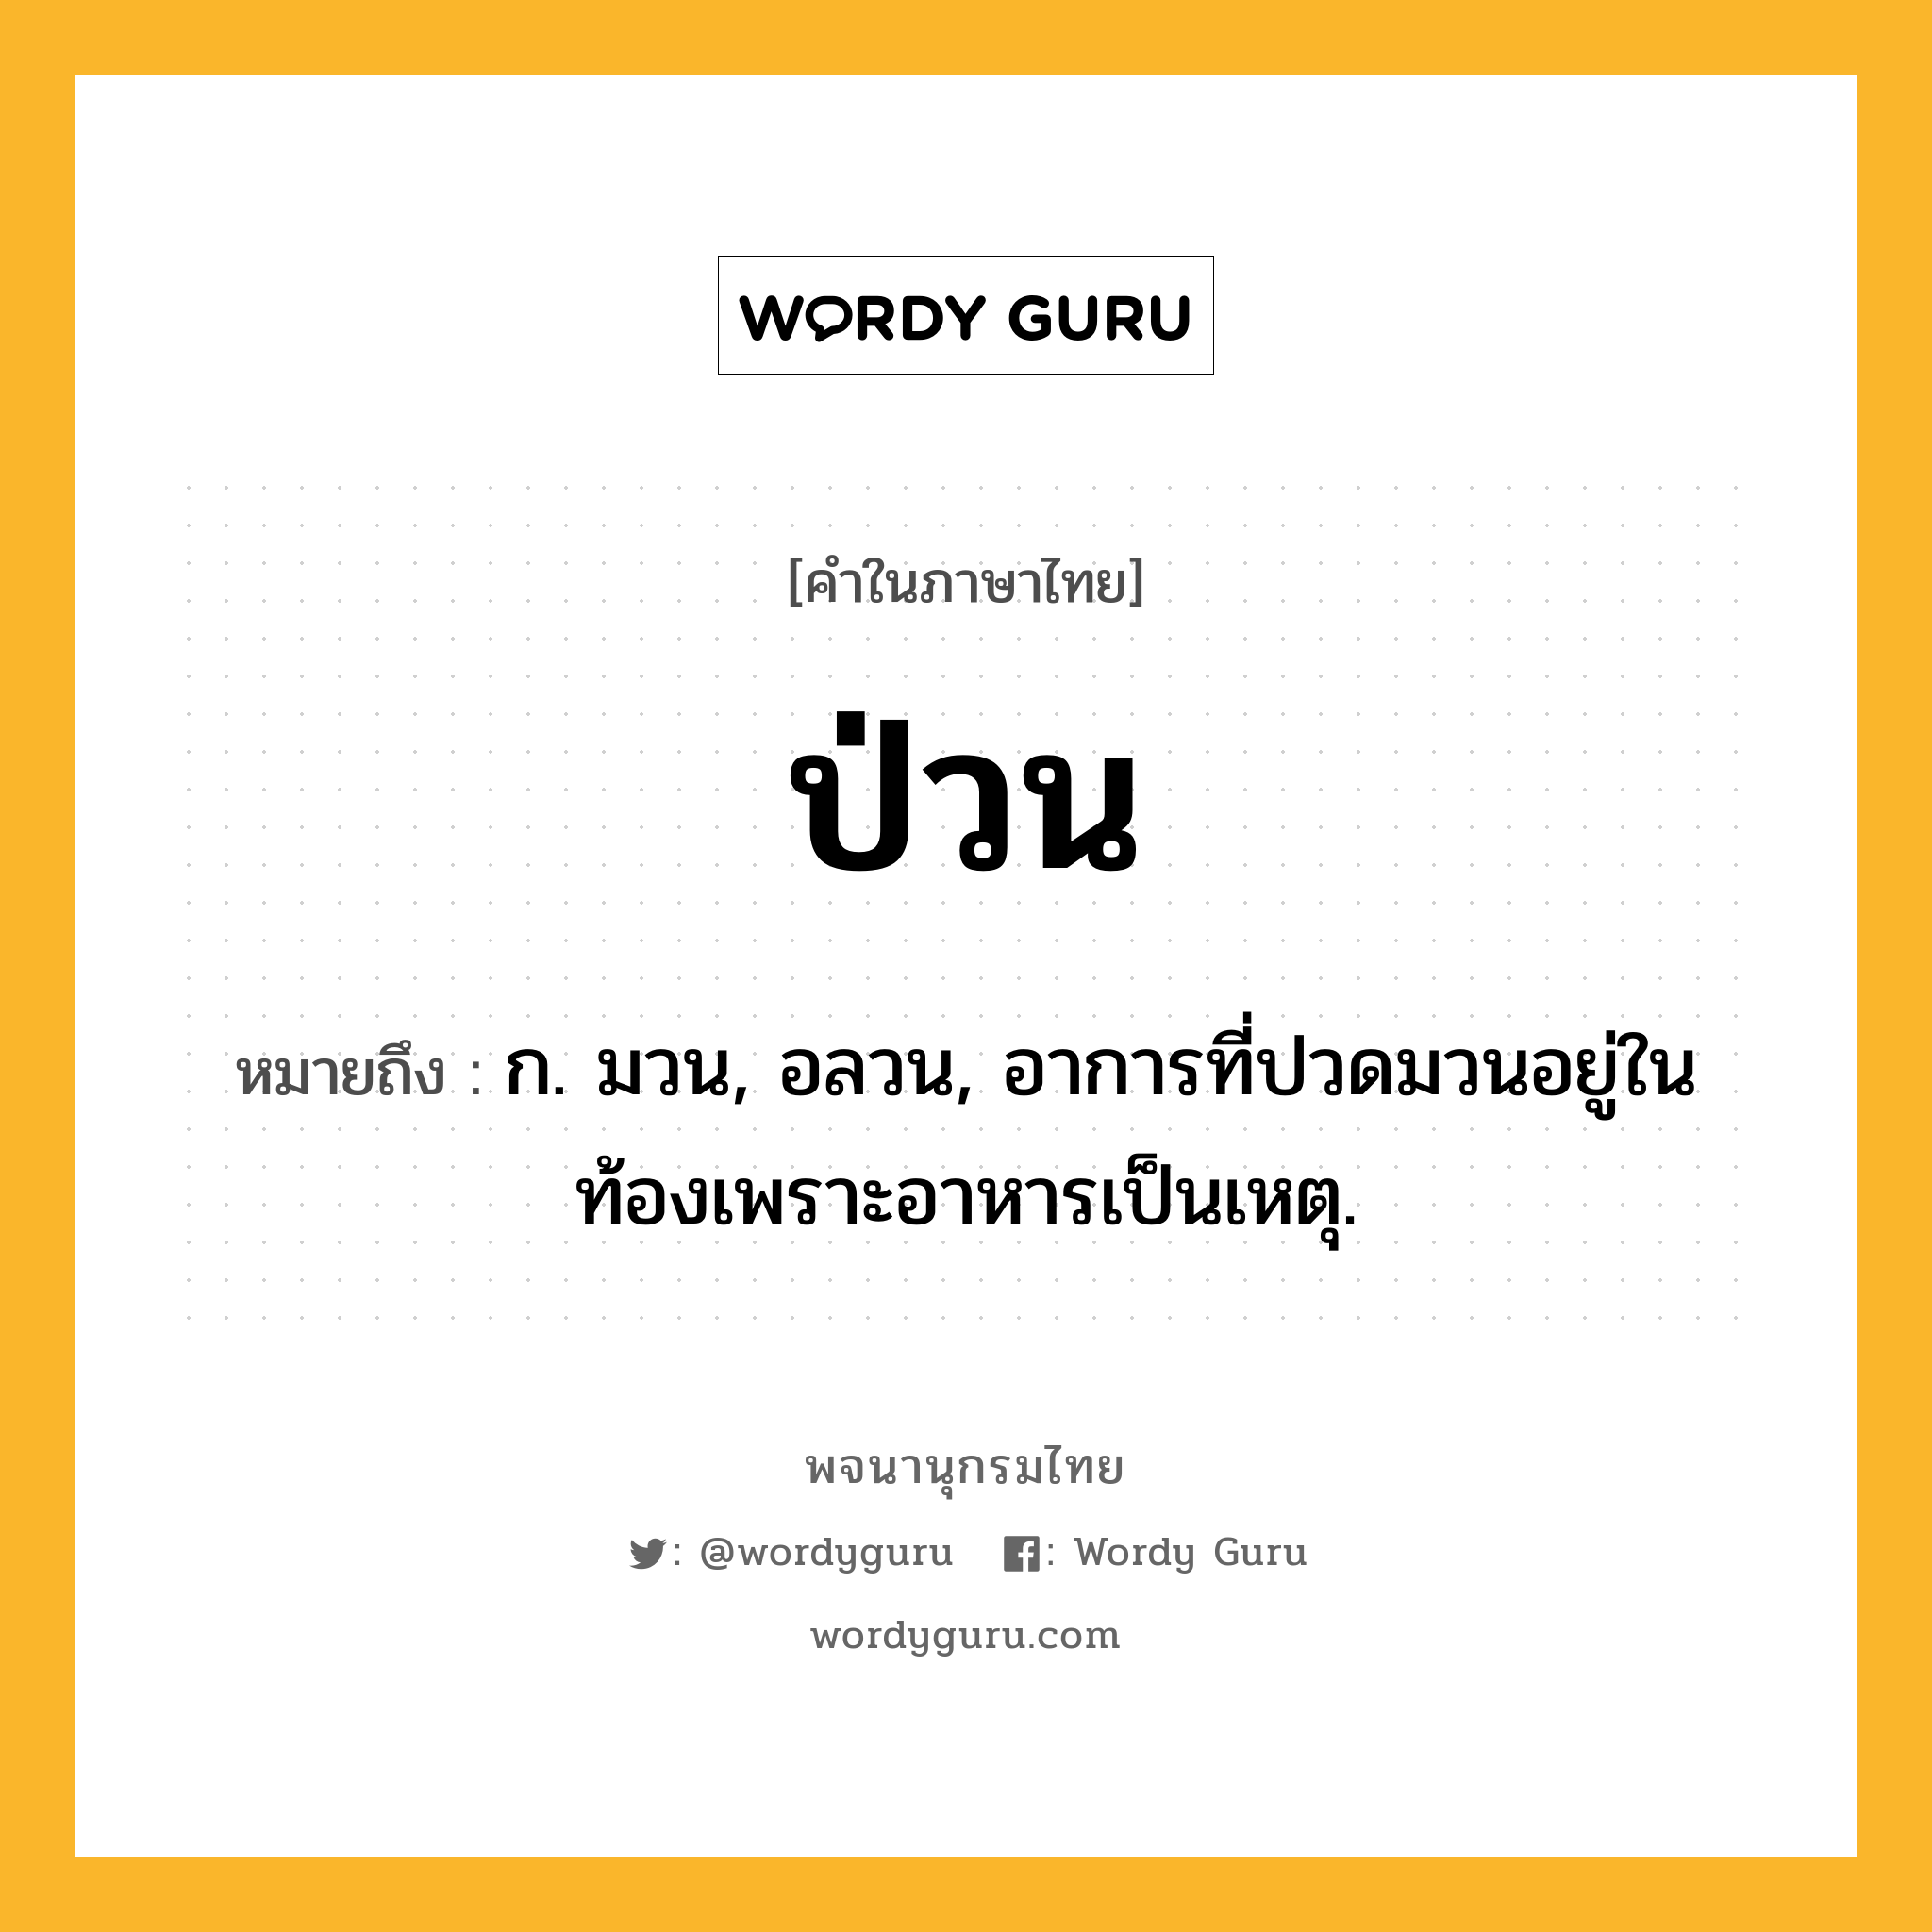 ป่วน ความหมาย หมายถึงอะไร?, คำในภาษาไทย ป่วน หมายถึง ก. มวน, อลวน, อาการที่ปวดมวนอยู่ในท้องเพราะอาหารเป็นเหตุ.